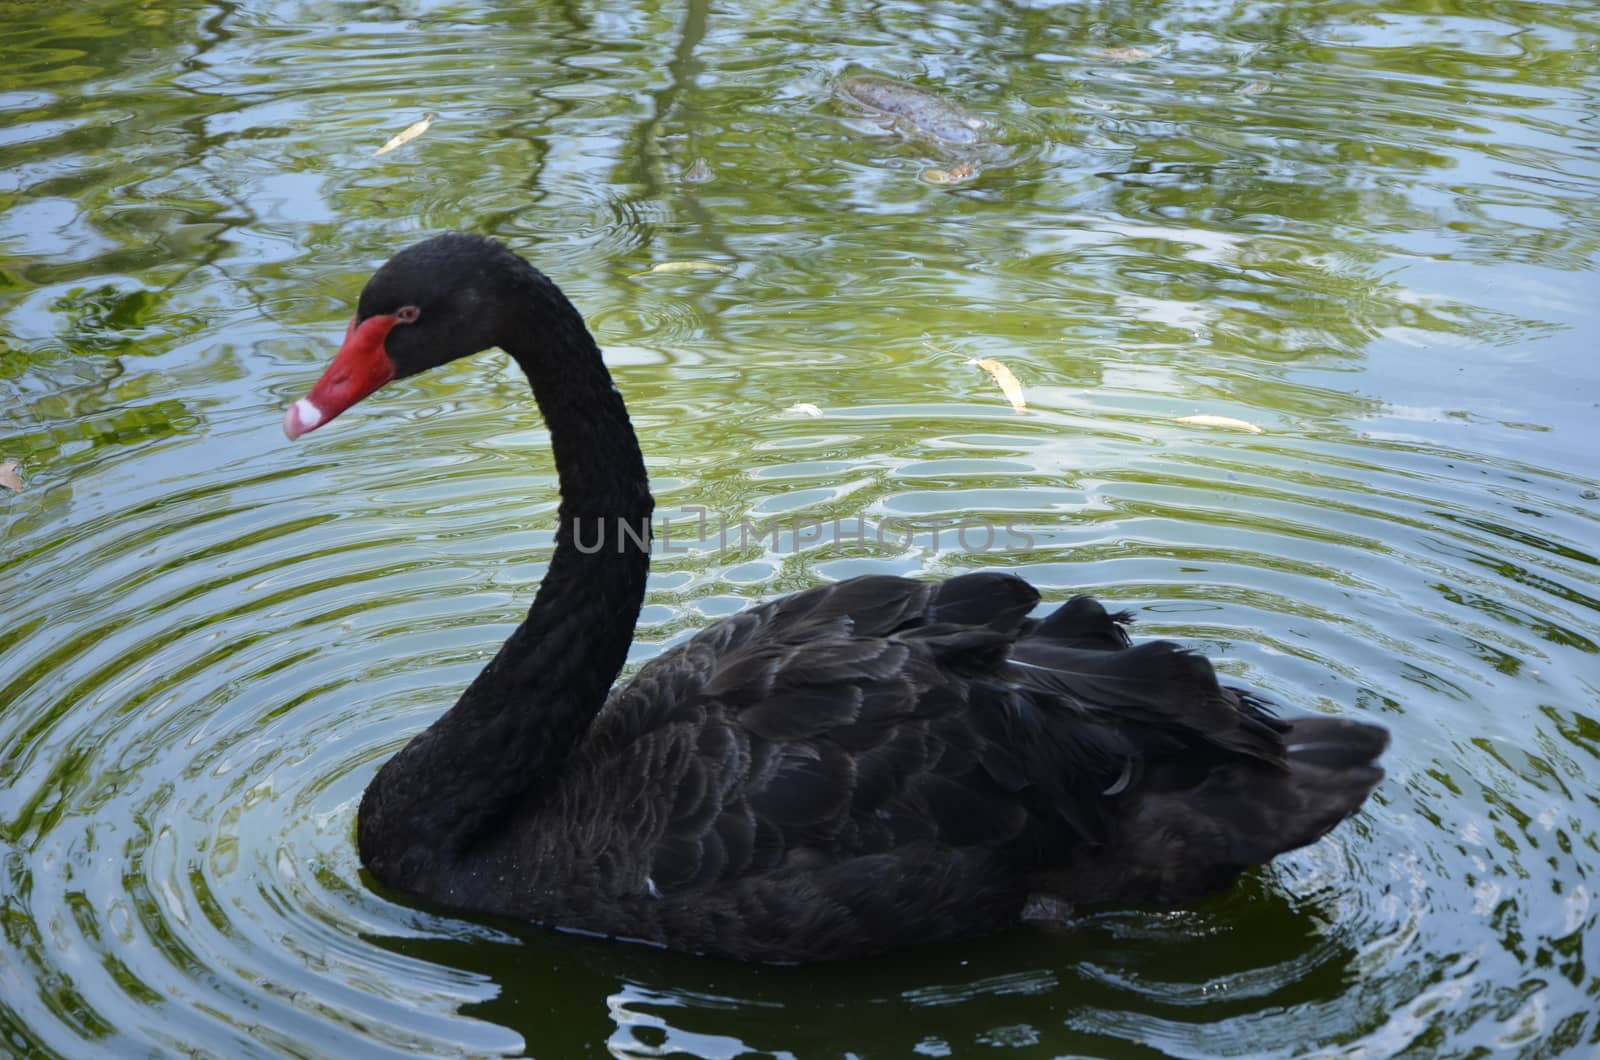 Black swan by haawri